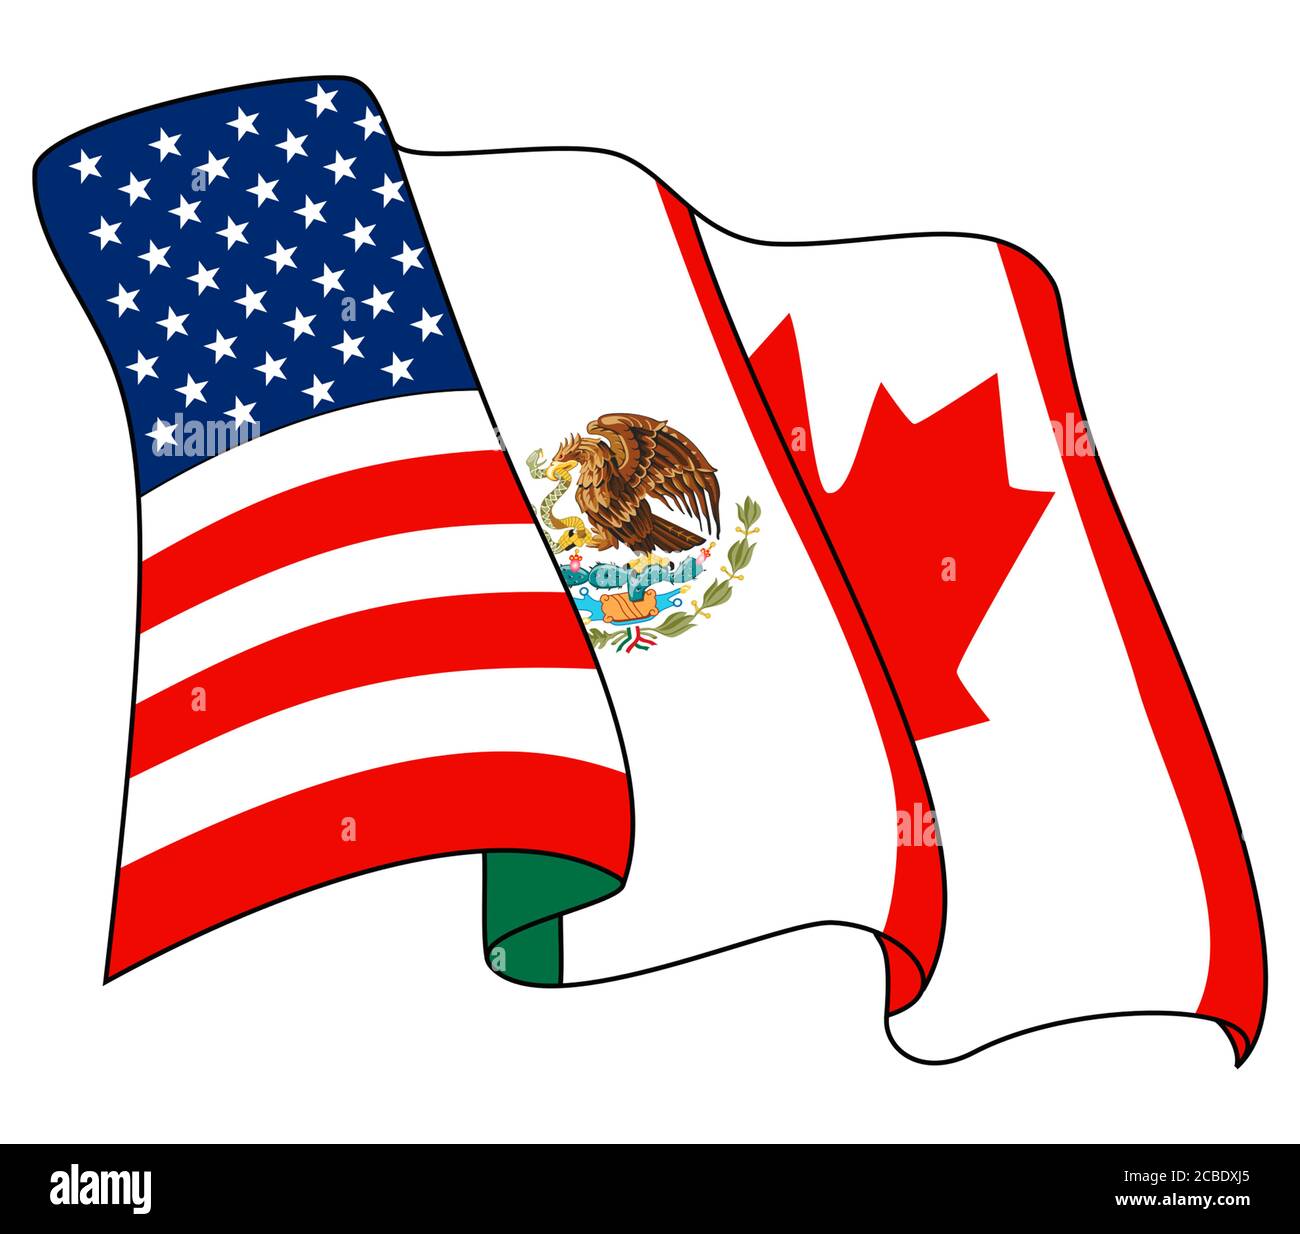 Accordo nordamericano di libero scambio NAFTA Foto Stock